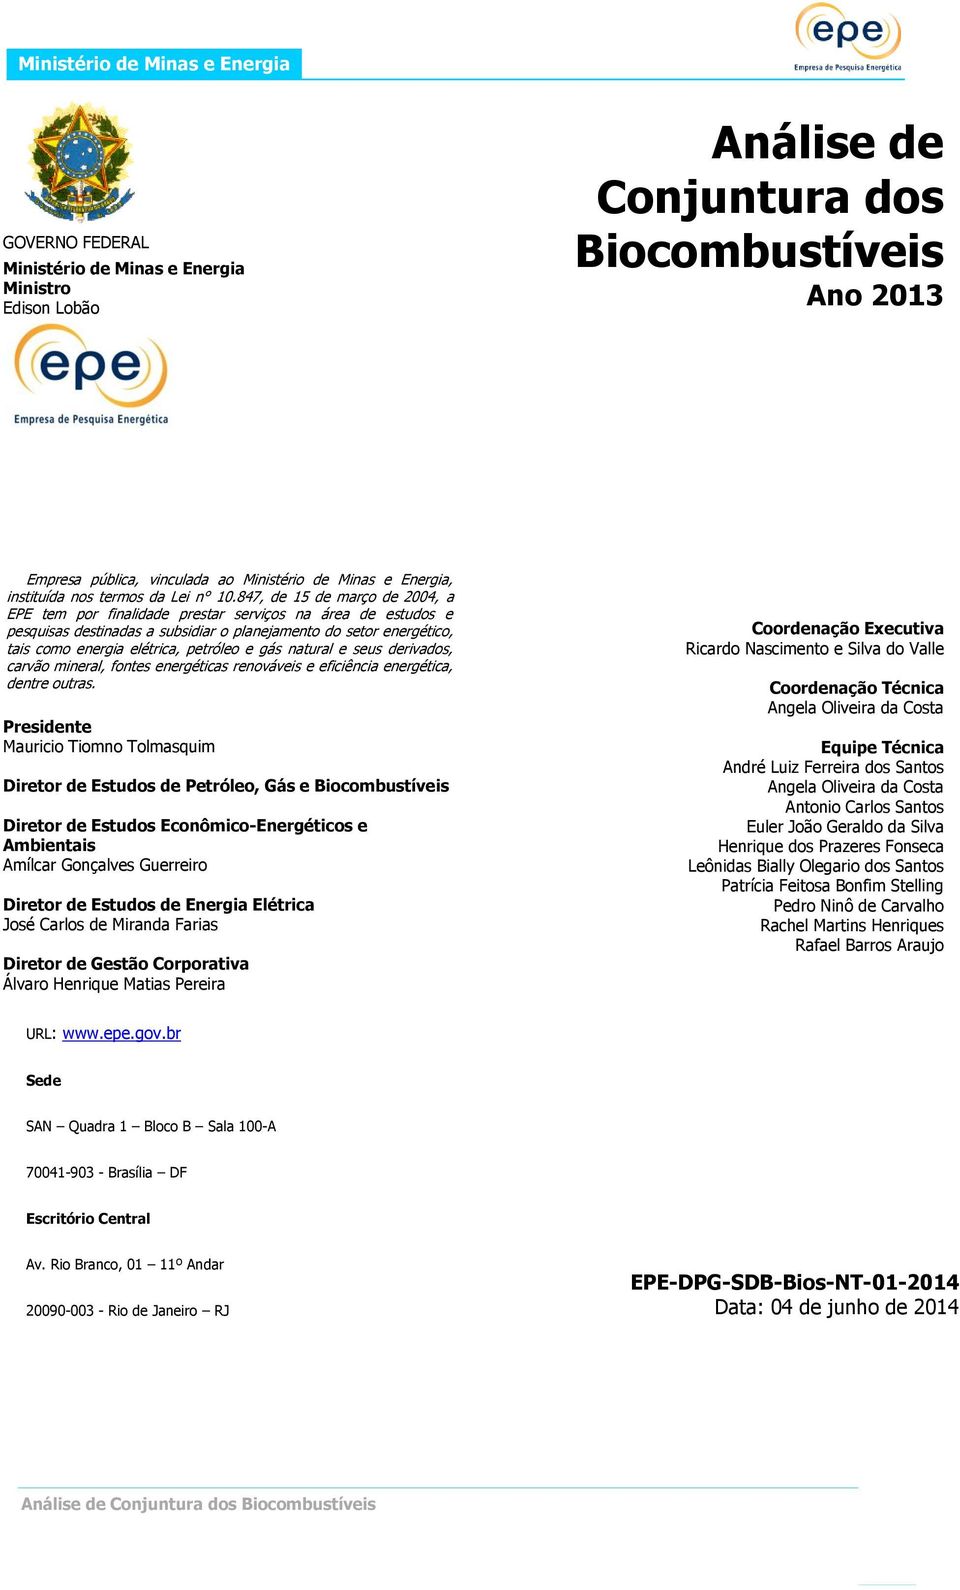 847, de 15 de março de 2004, a EPE tem por finalidade prestar serviços na área de estudos e pesquisas destinadas a subsidiar o planejamento do setor energético, tais como energia elétrica, petróleo e